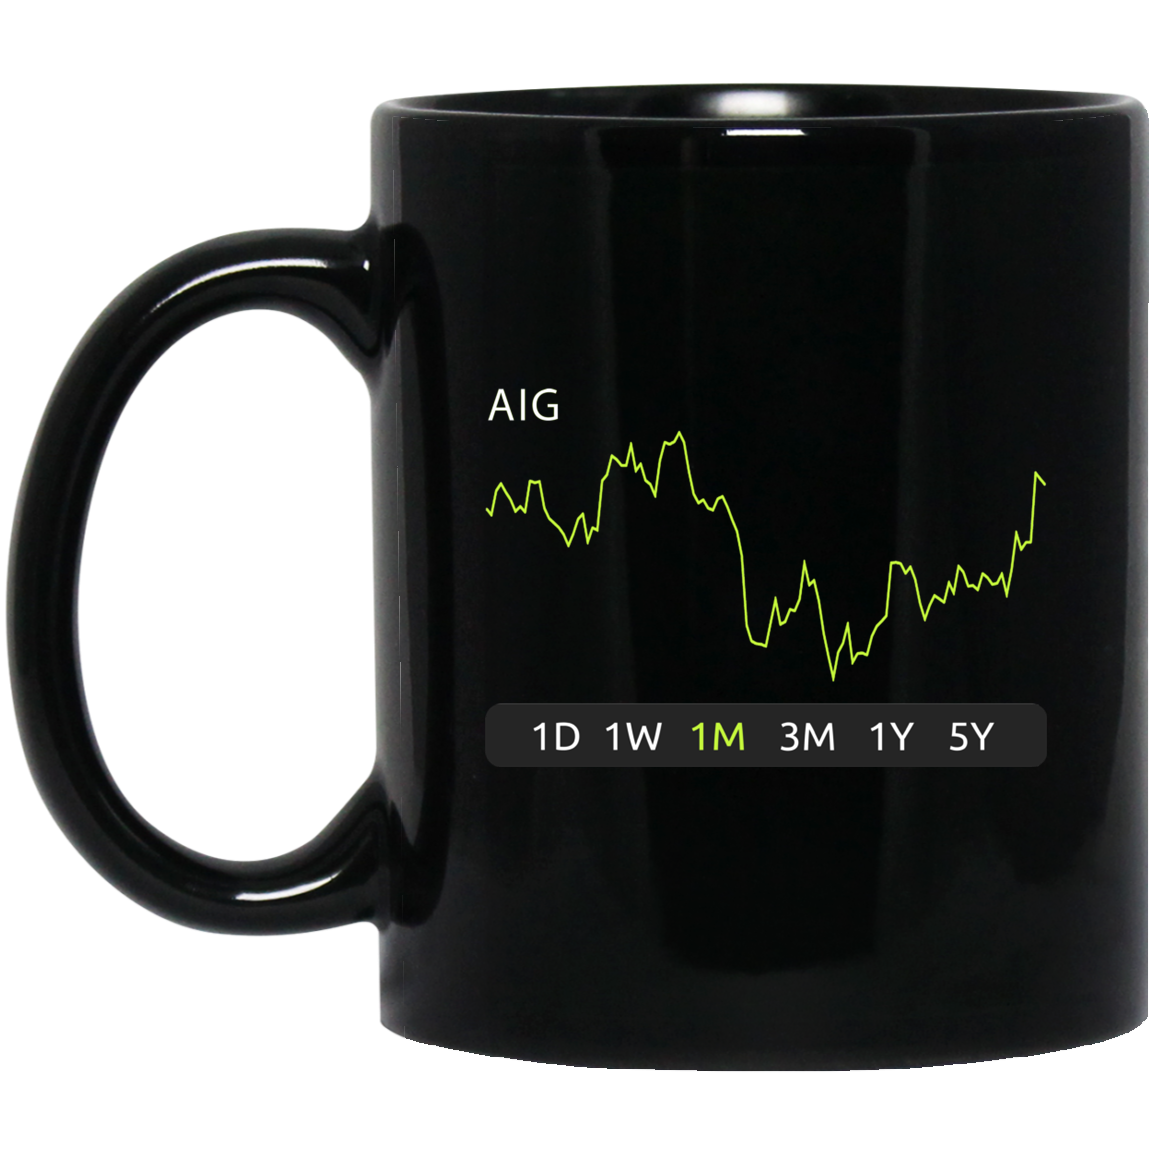 AIG Stock 1m Mug